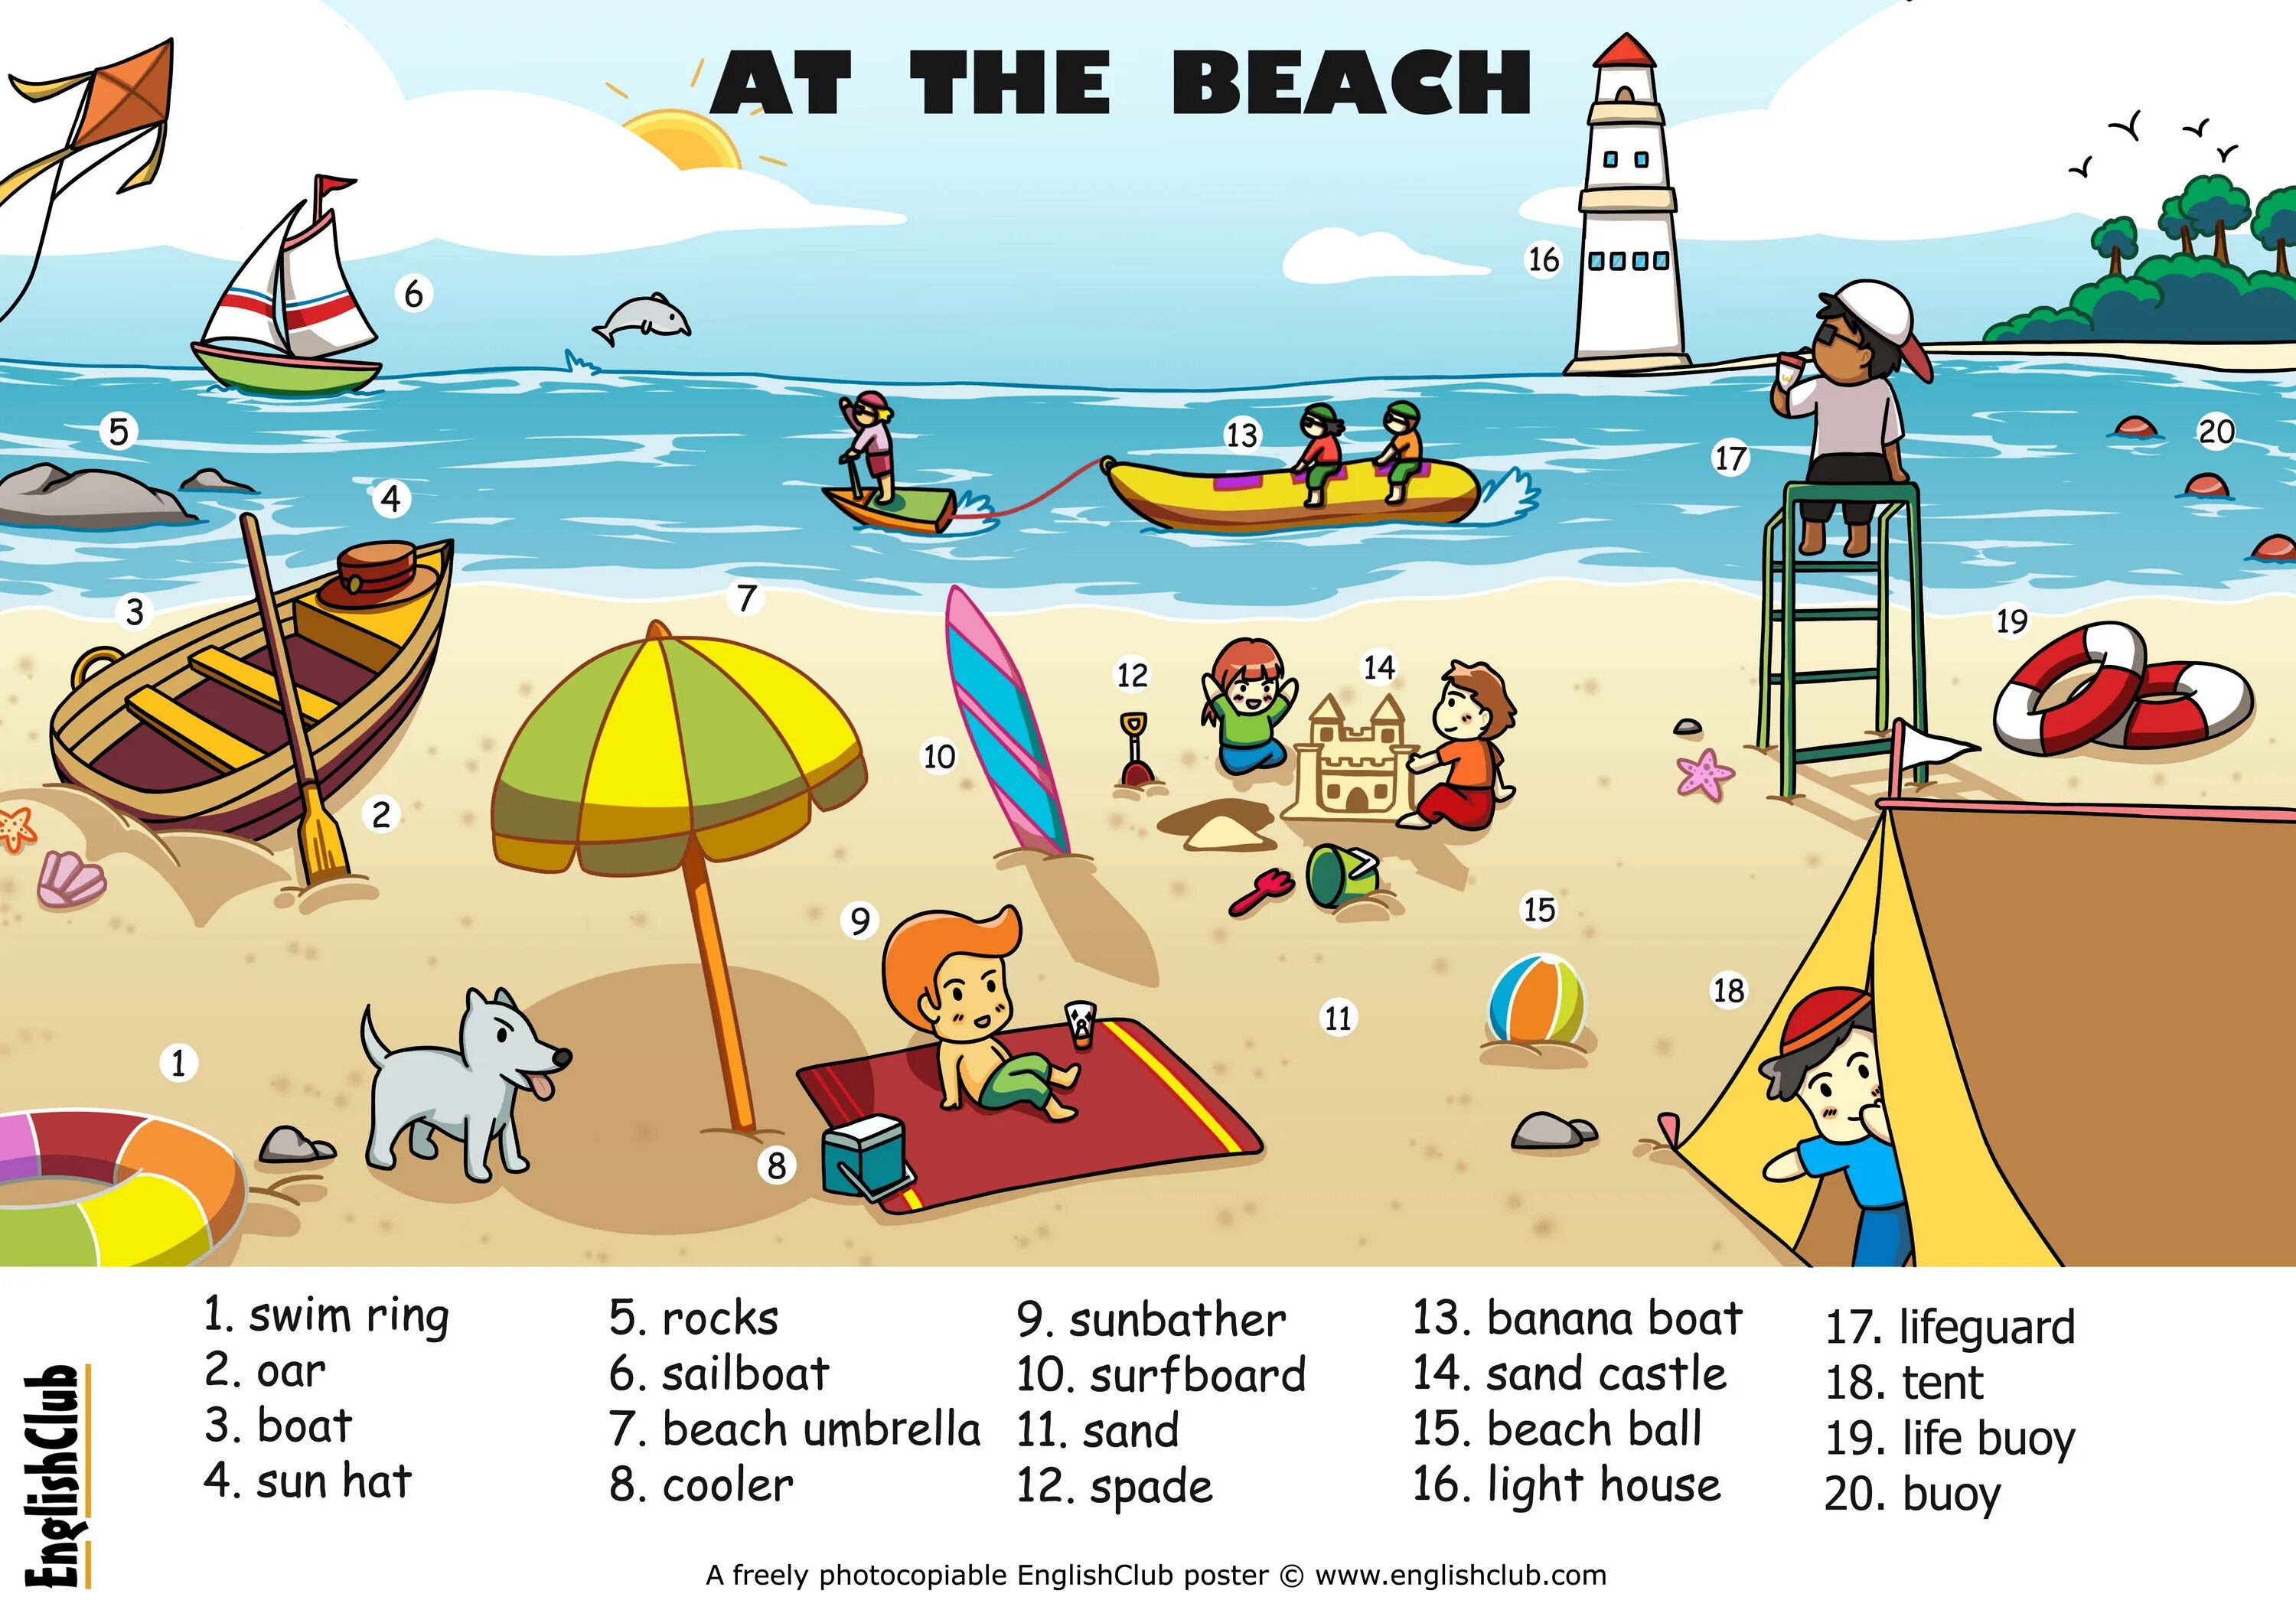 Лето по английски перевод. Пляж на английском. Описание картинки пляж. Описание картинки на английском языке. Beach Vocabulary for Kids.